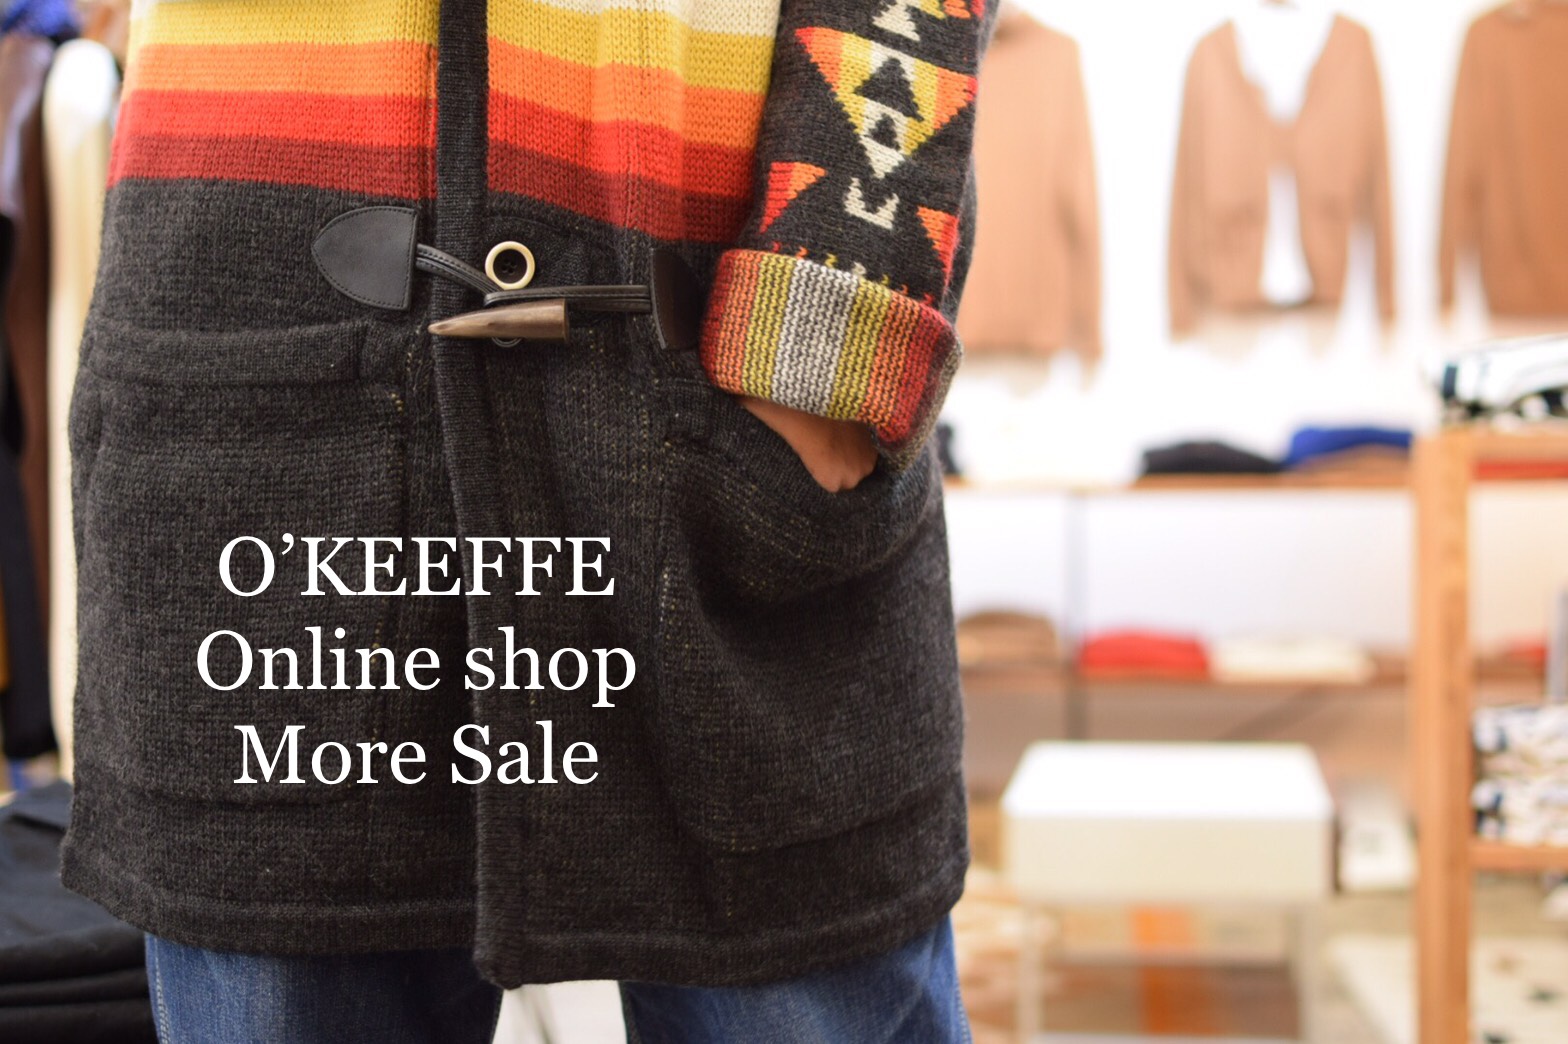 Online Shop More Sale 開催!!